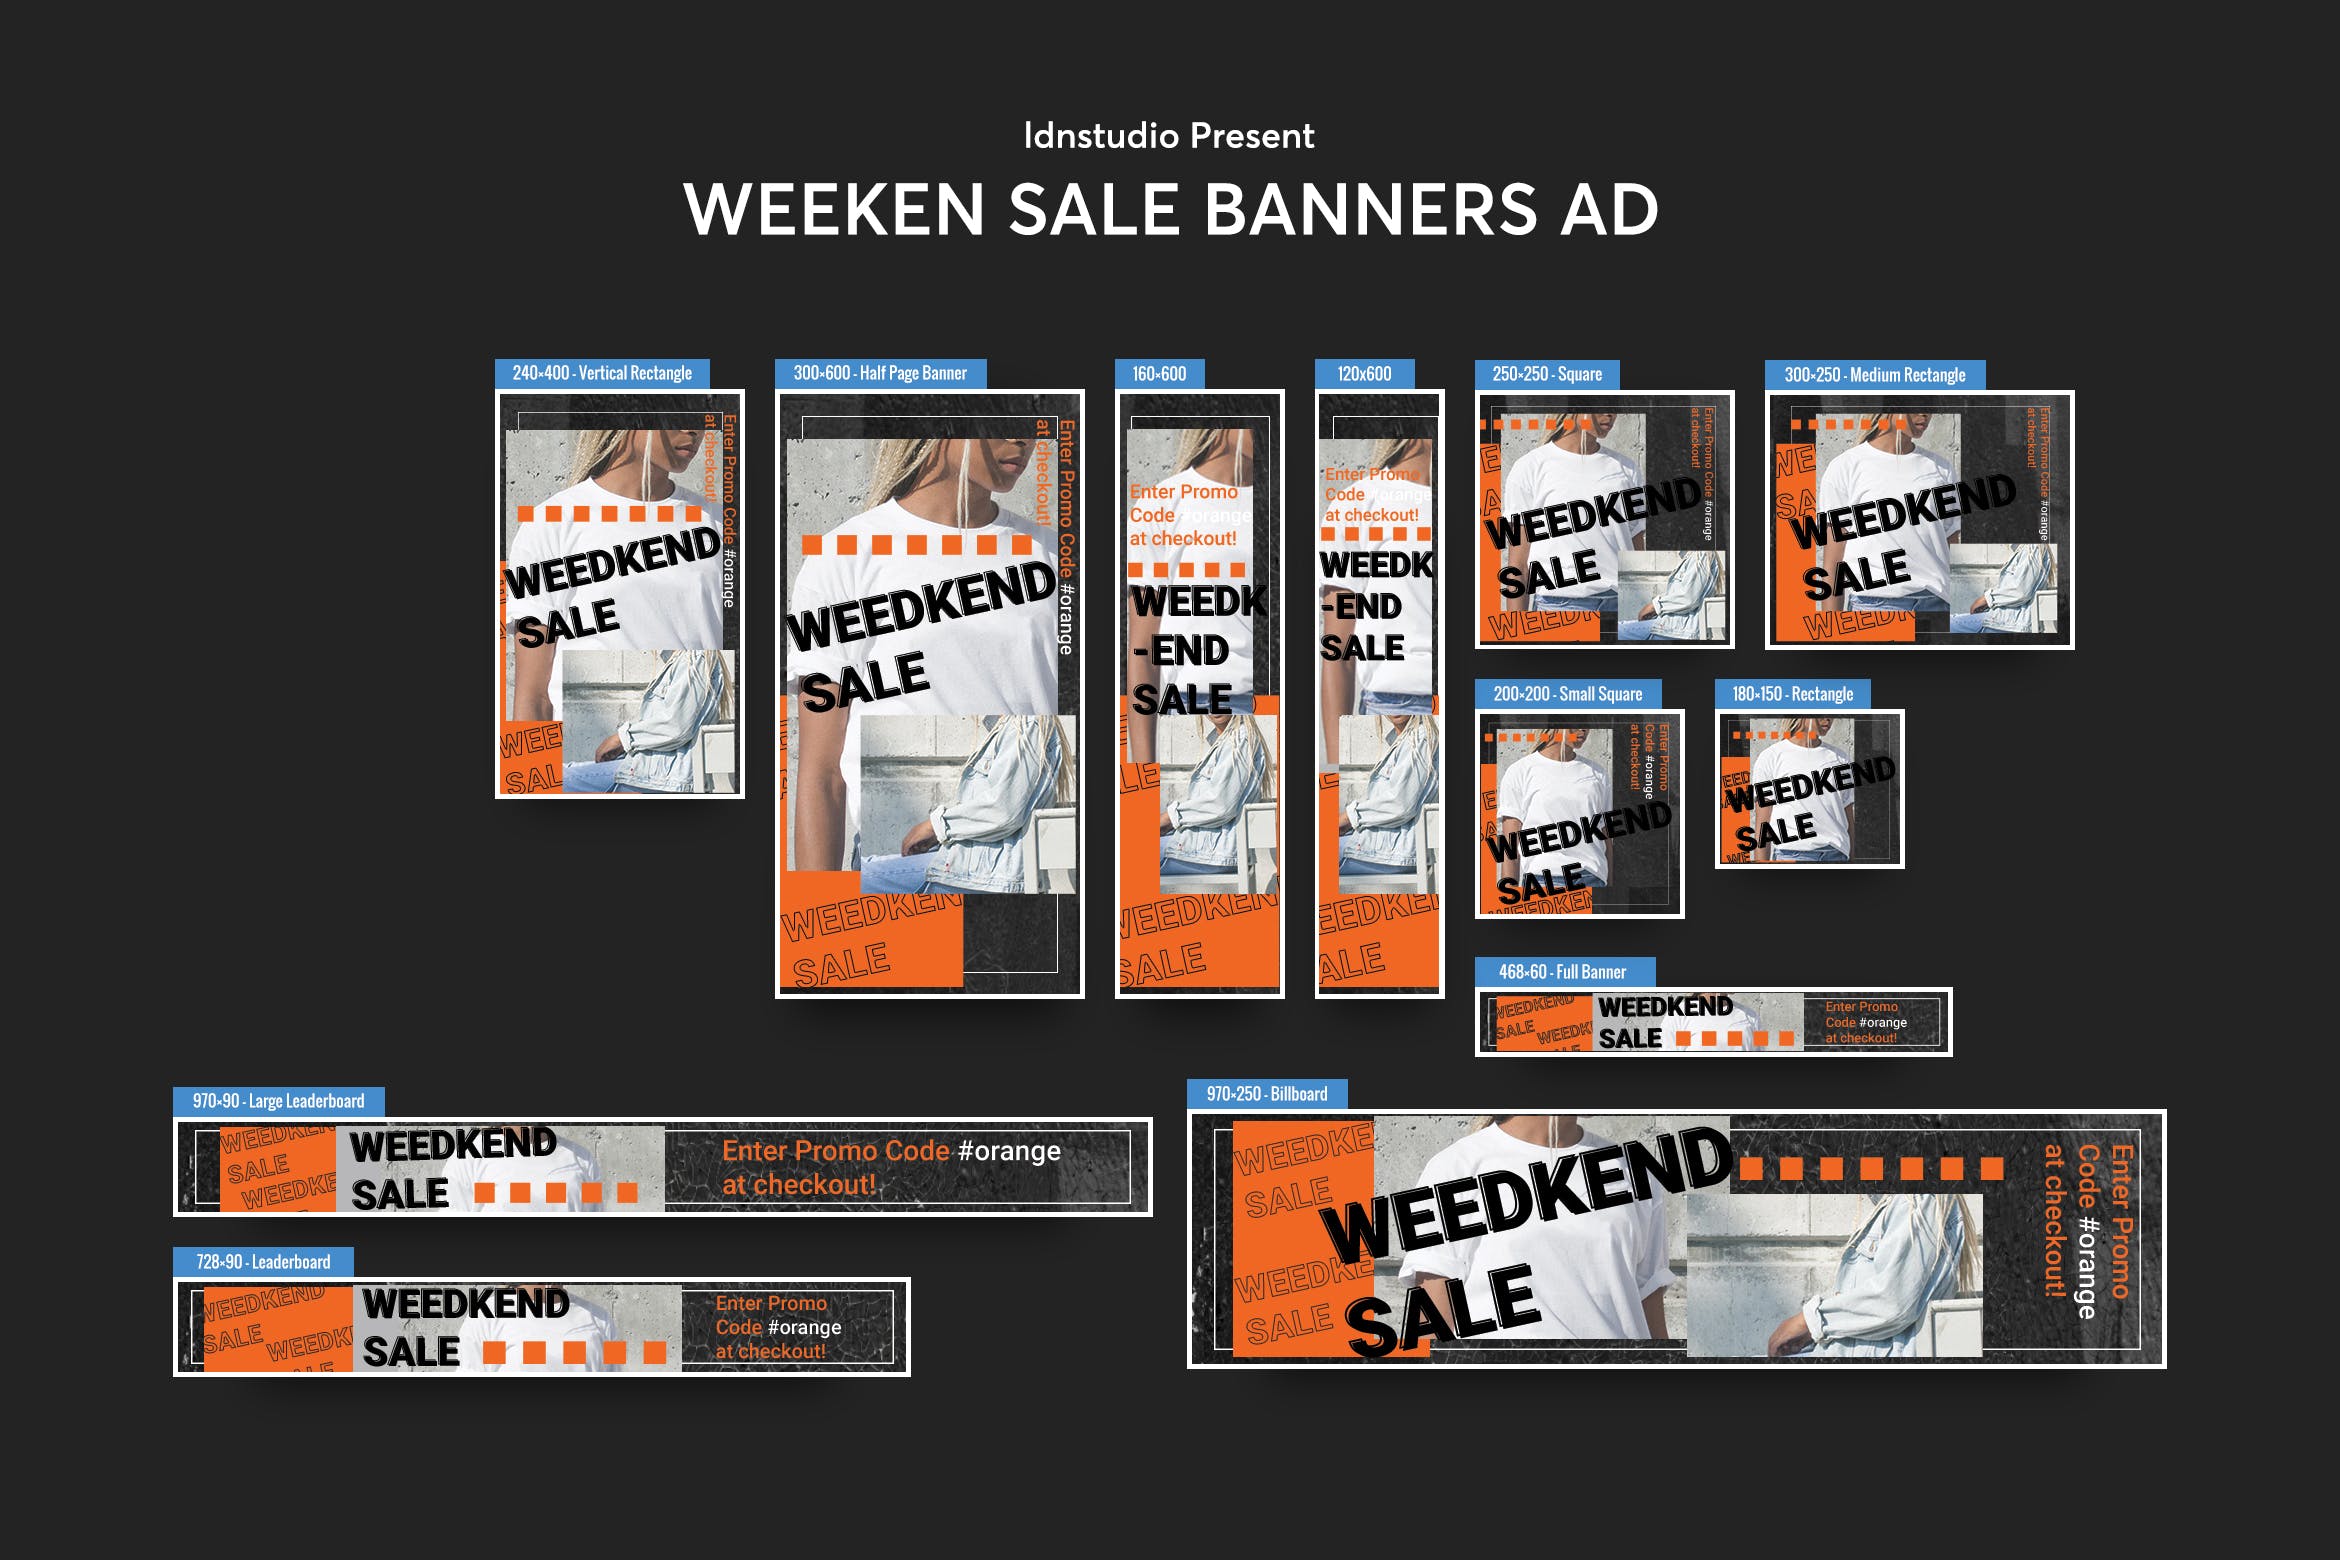 周末促销活动主题网站Banner横幅大洋岛精选广告模板 Weeken Sale Banners Ad PSD Template插图